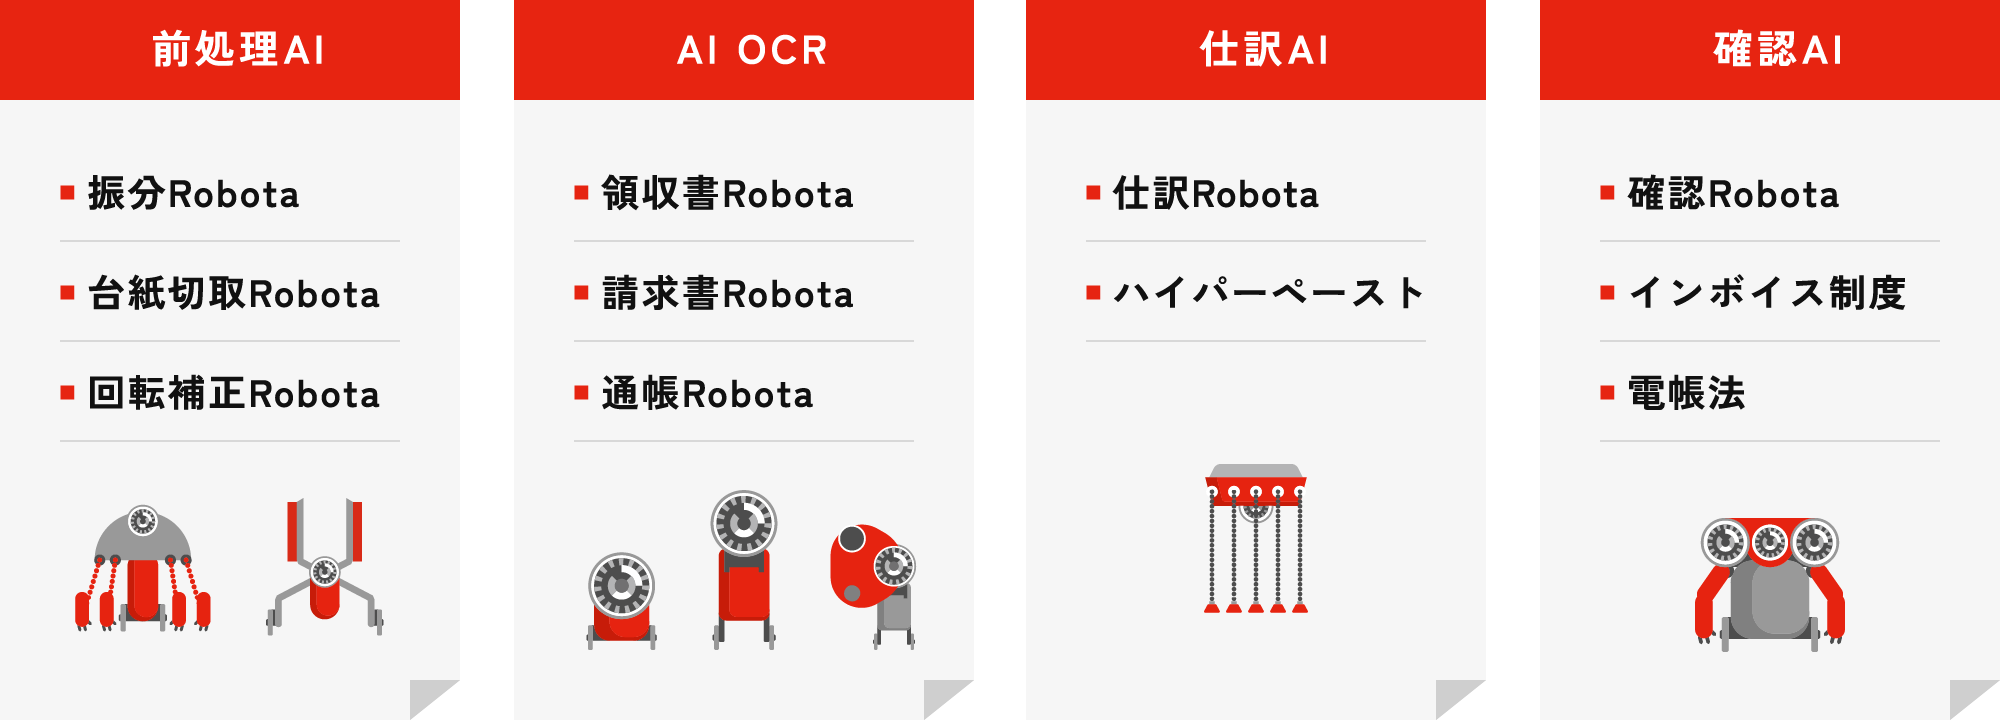 処理前AI、AI OCR、仕訳SI、確認AI